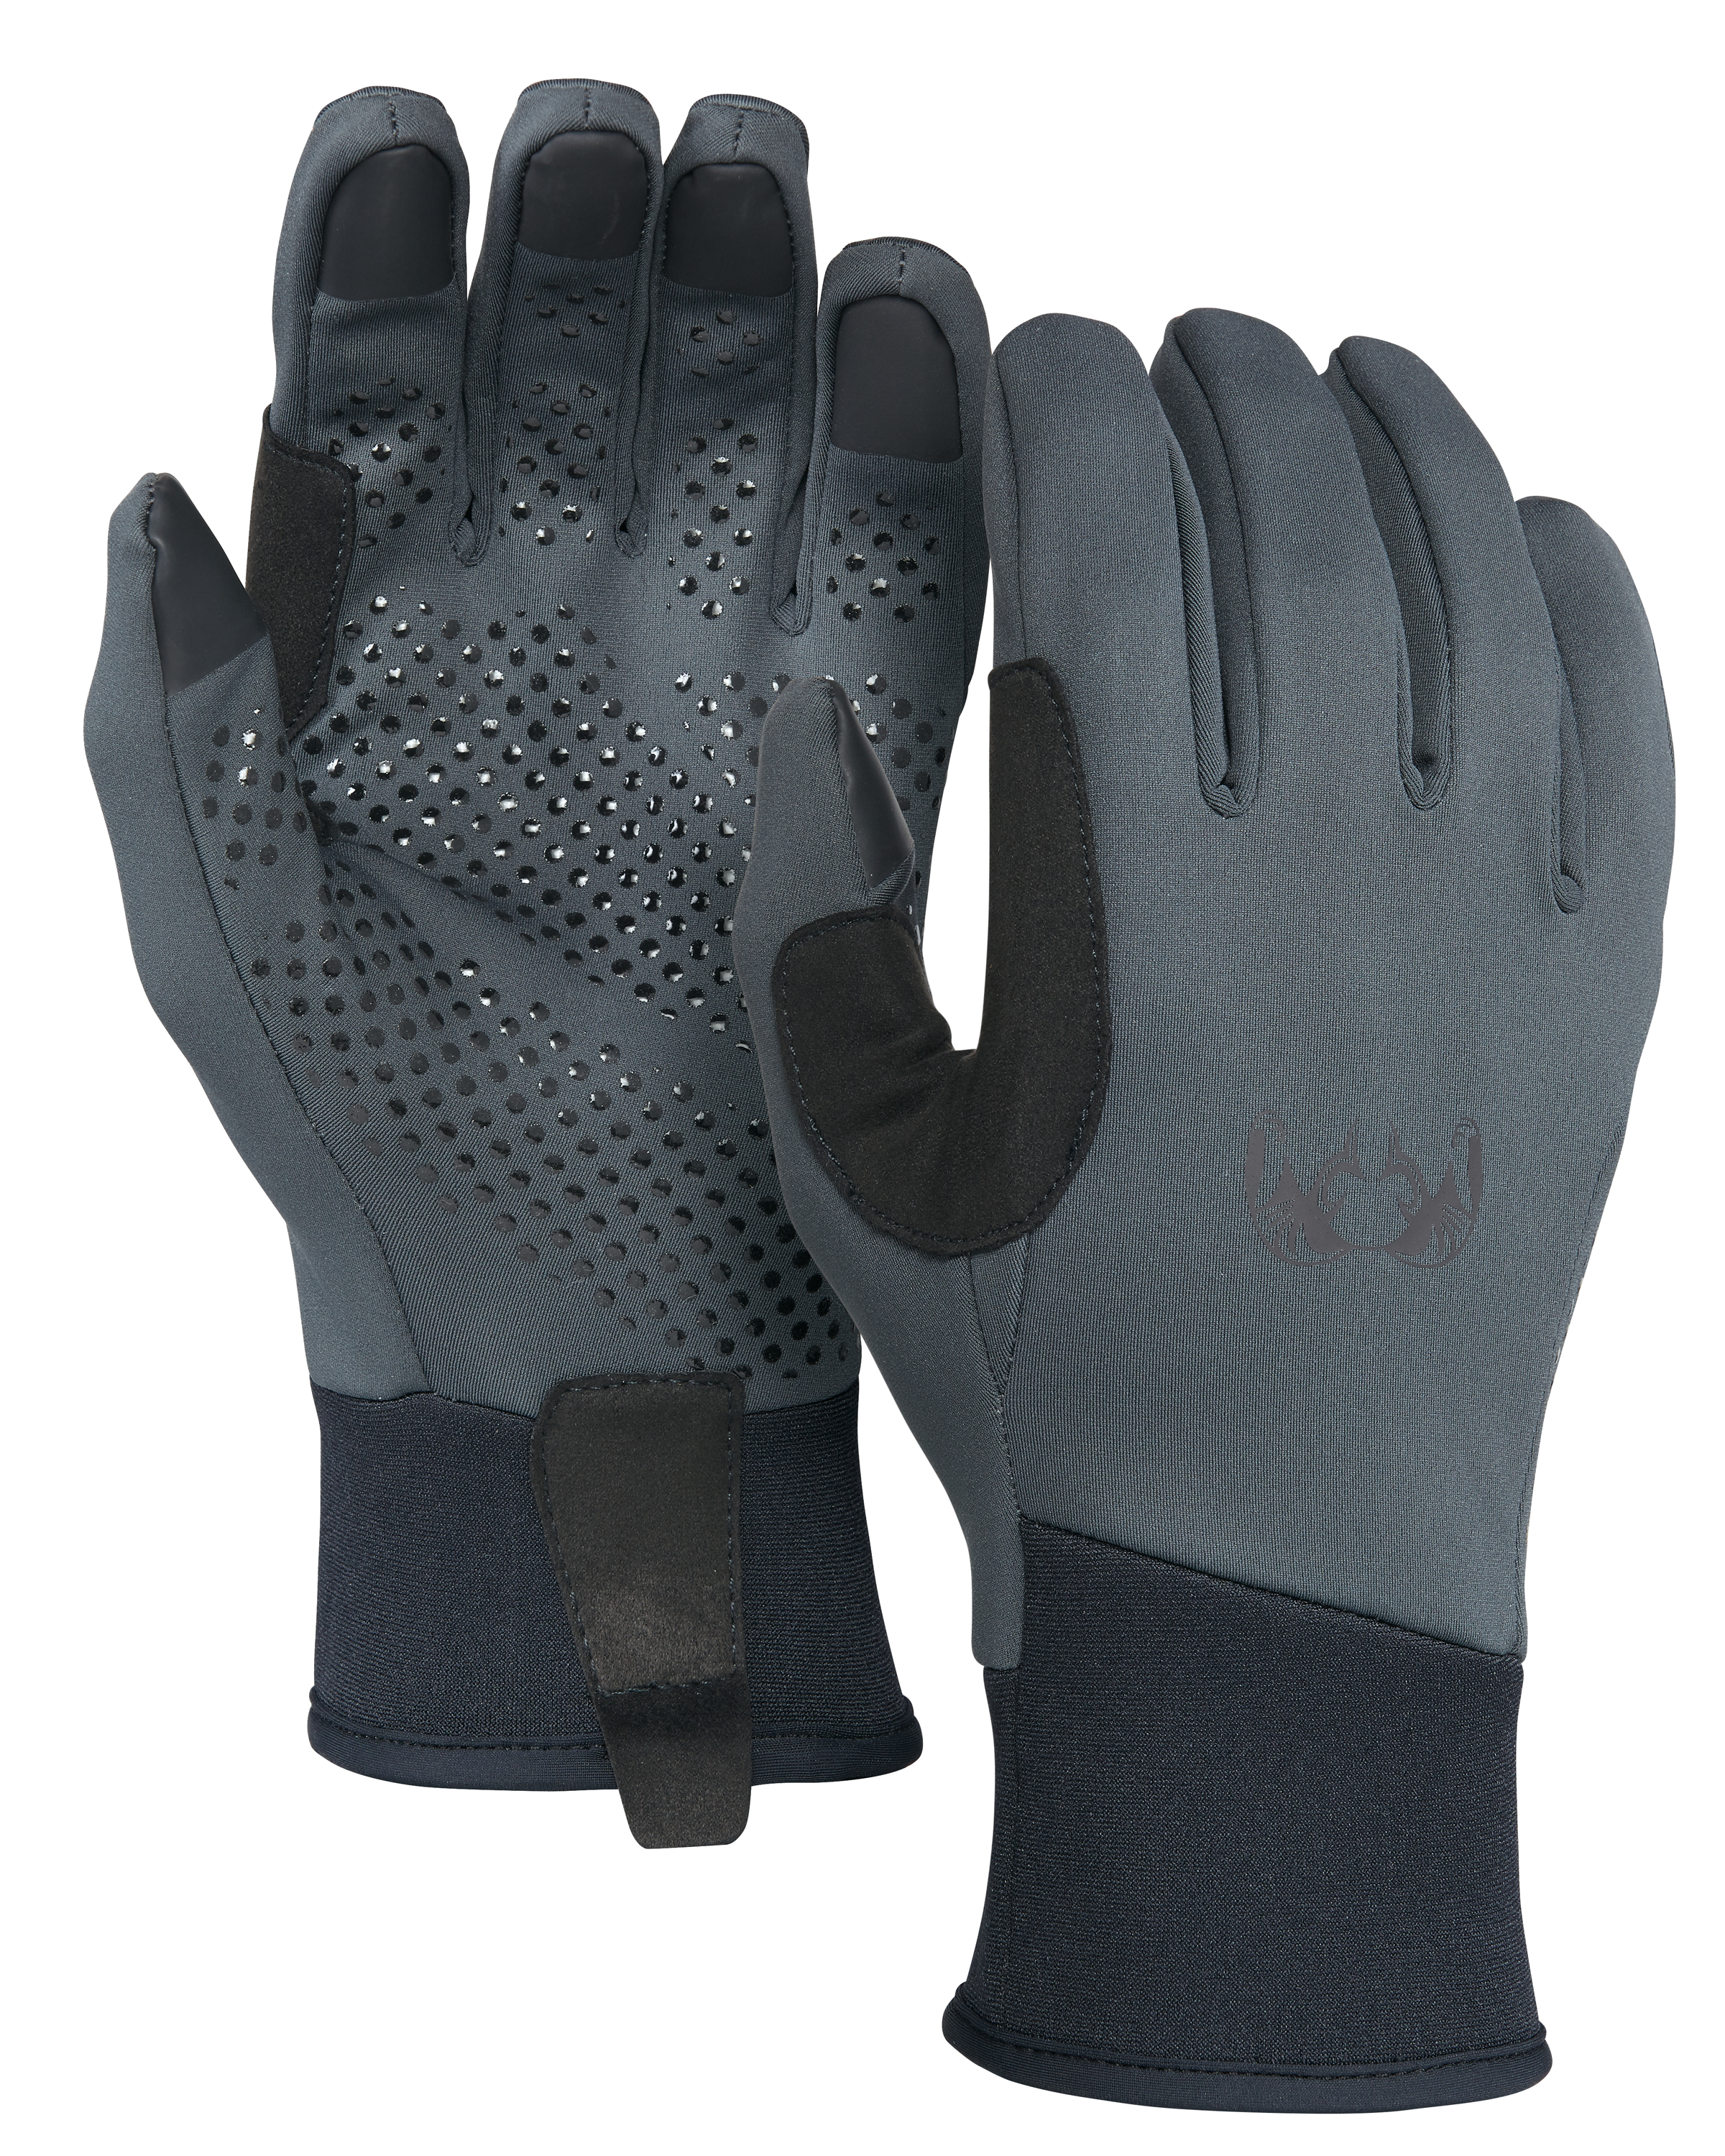 KUIU Axis Hunting Glove in Gunmetal | Small